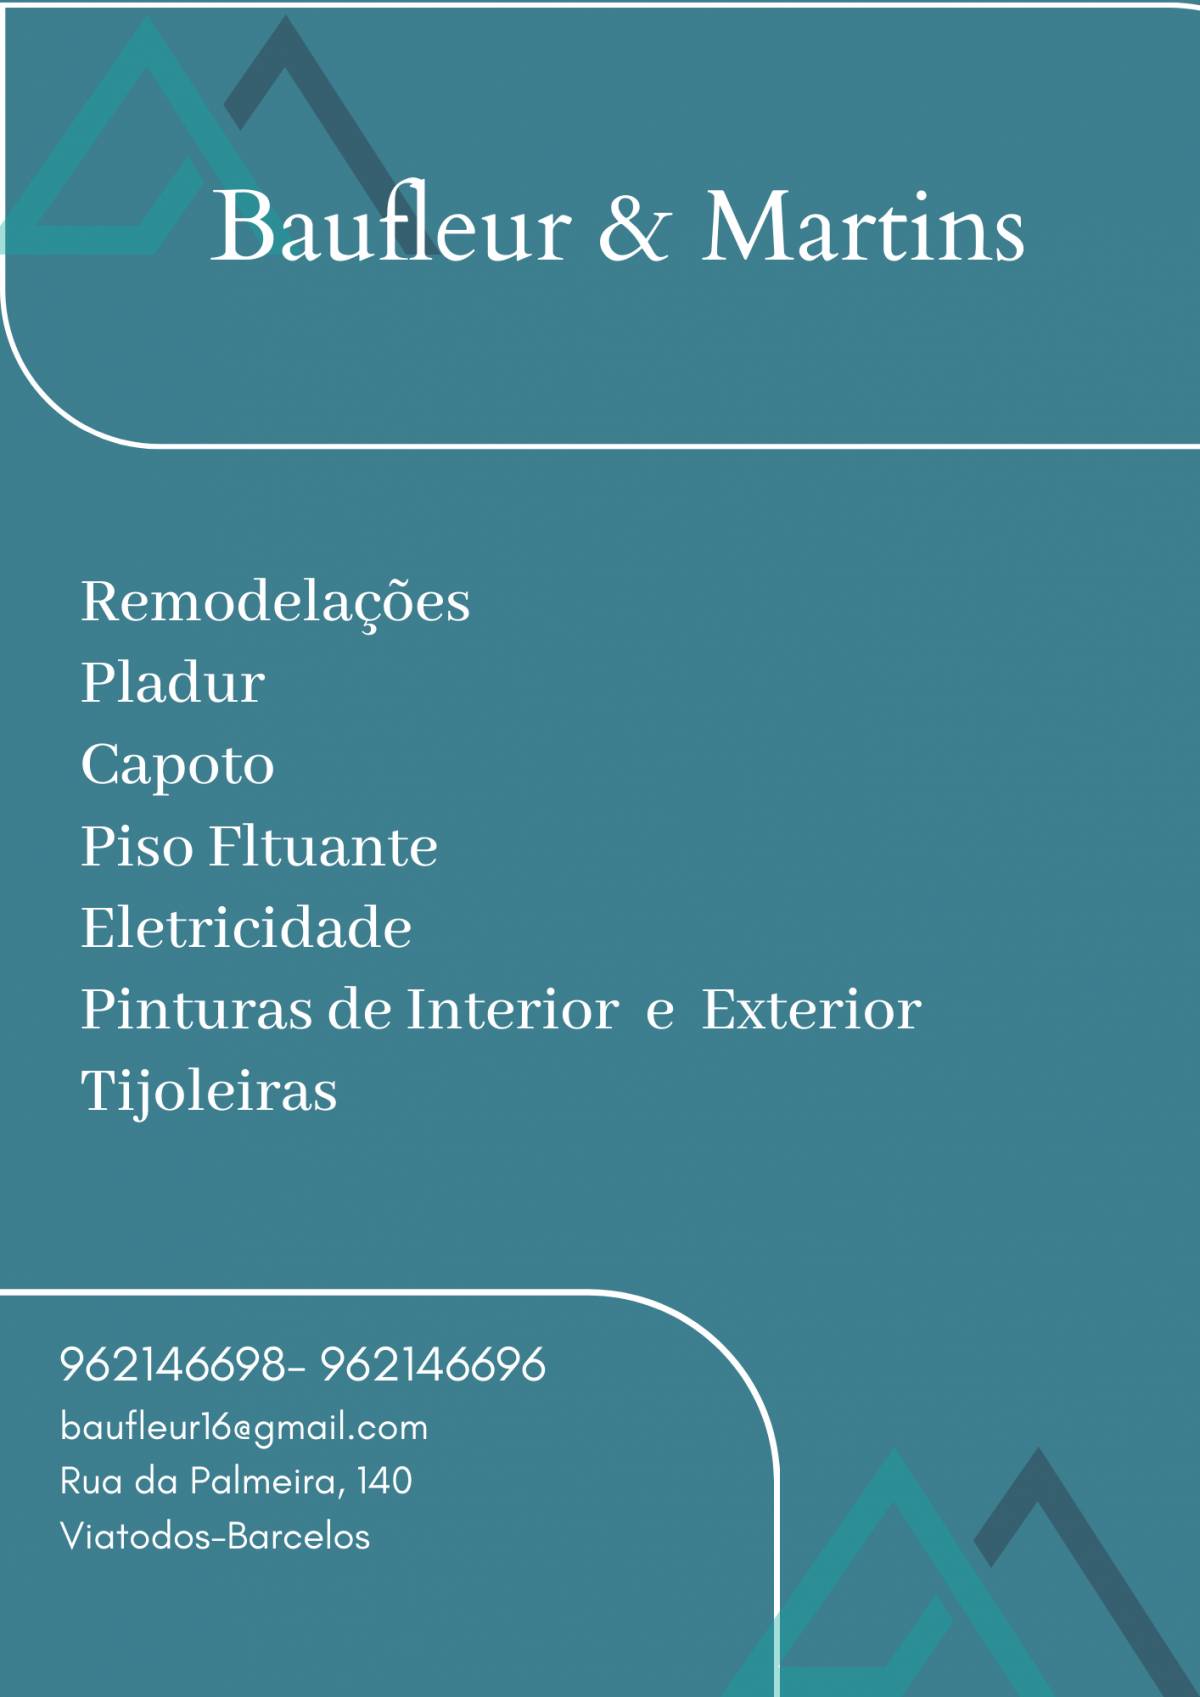 Baufleur & Martins - Remodelações - Barcelos - Instalação de Pavimento em Pedra ou Ladrilho